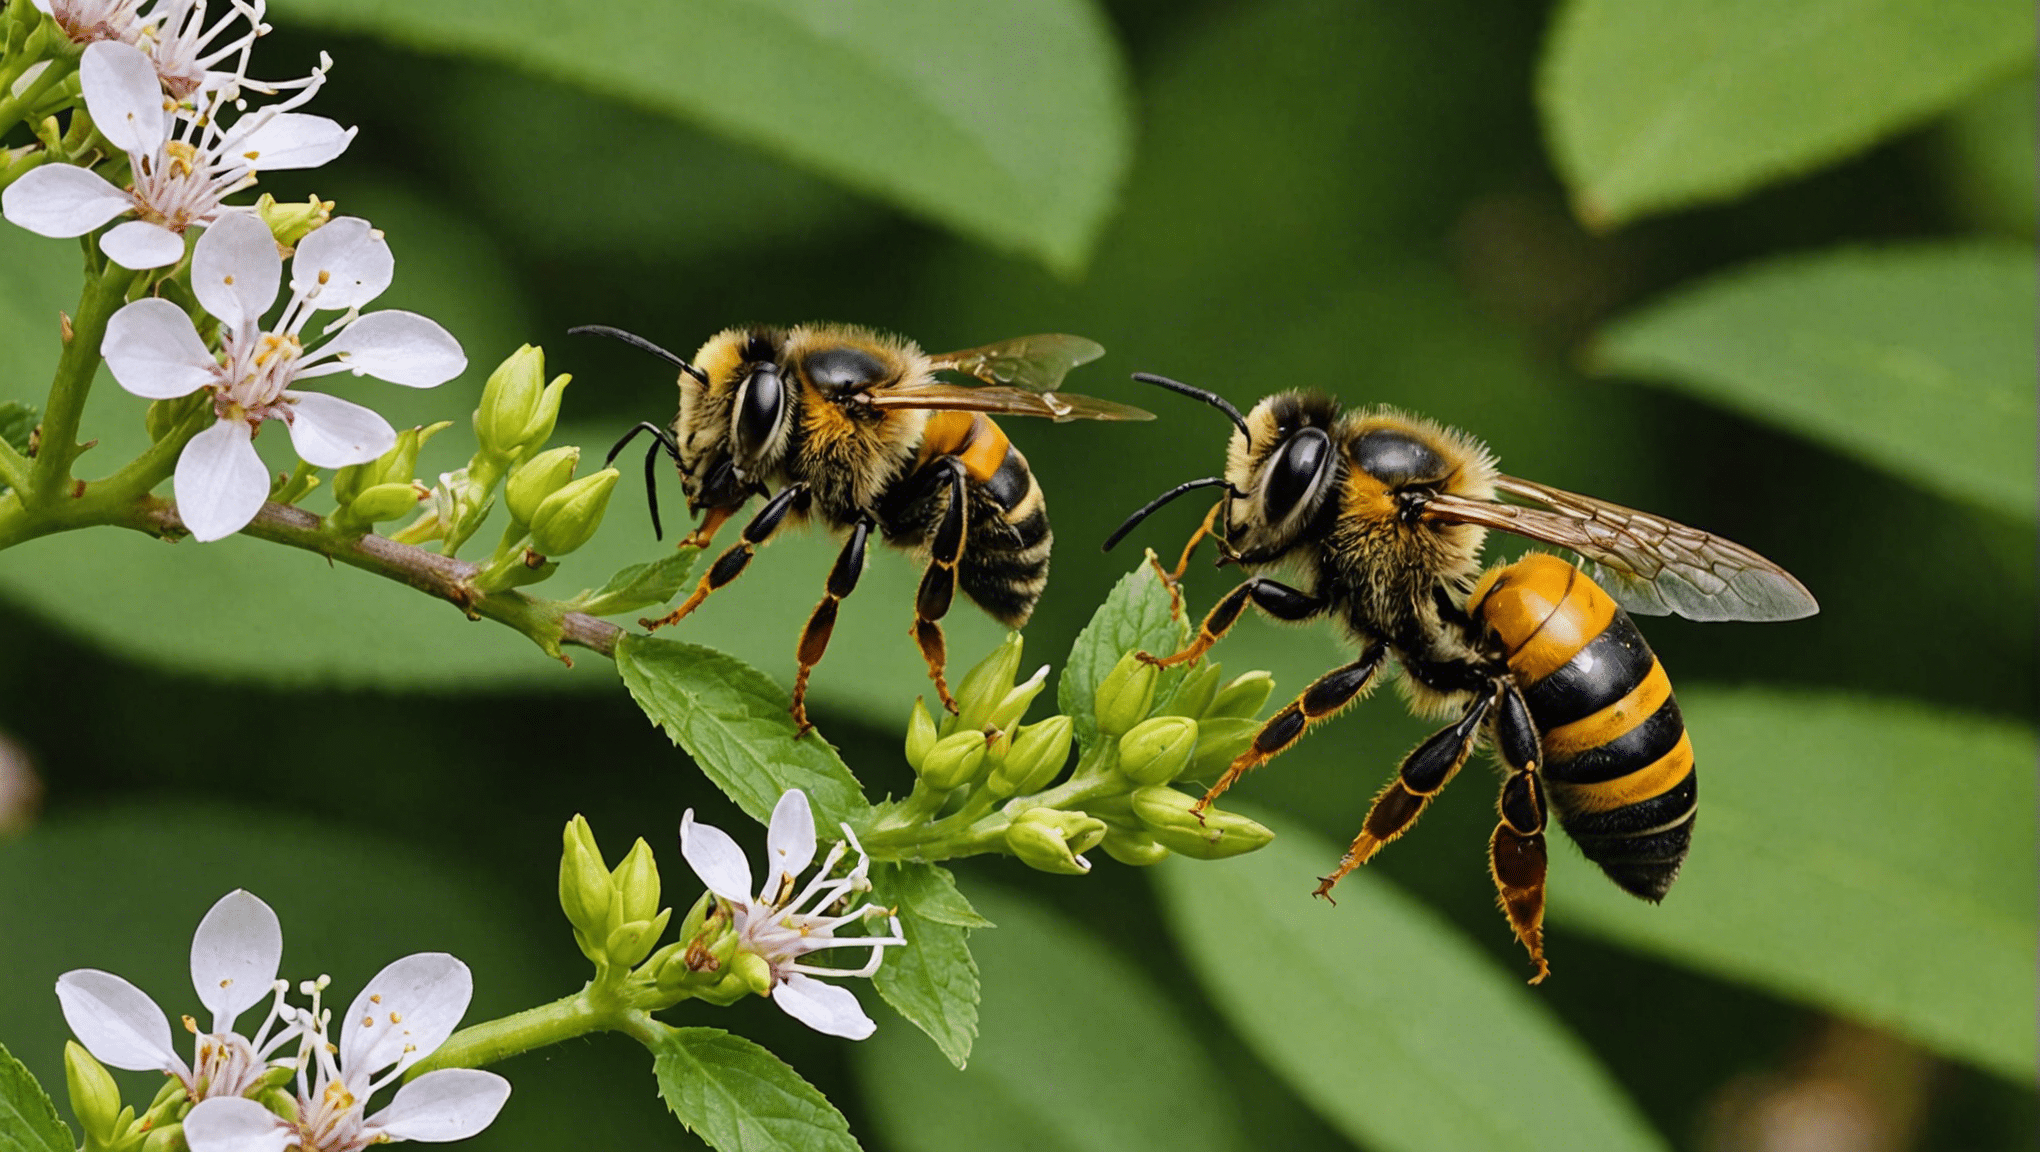 découvrez les distinctions entre les abeilles, les guêpes et les frelons et découvrez leur apparence, leur comportement et leurs habitats.